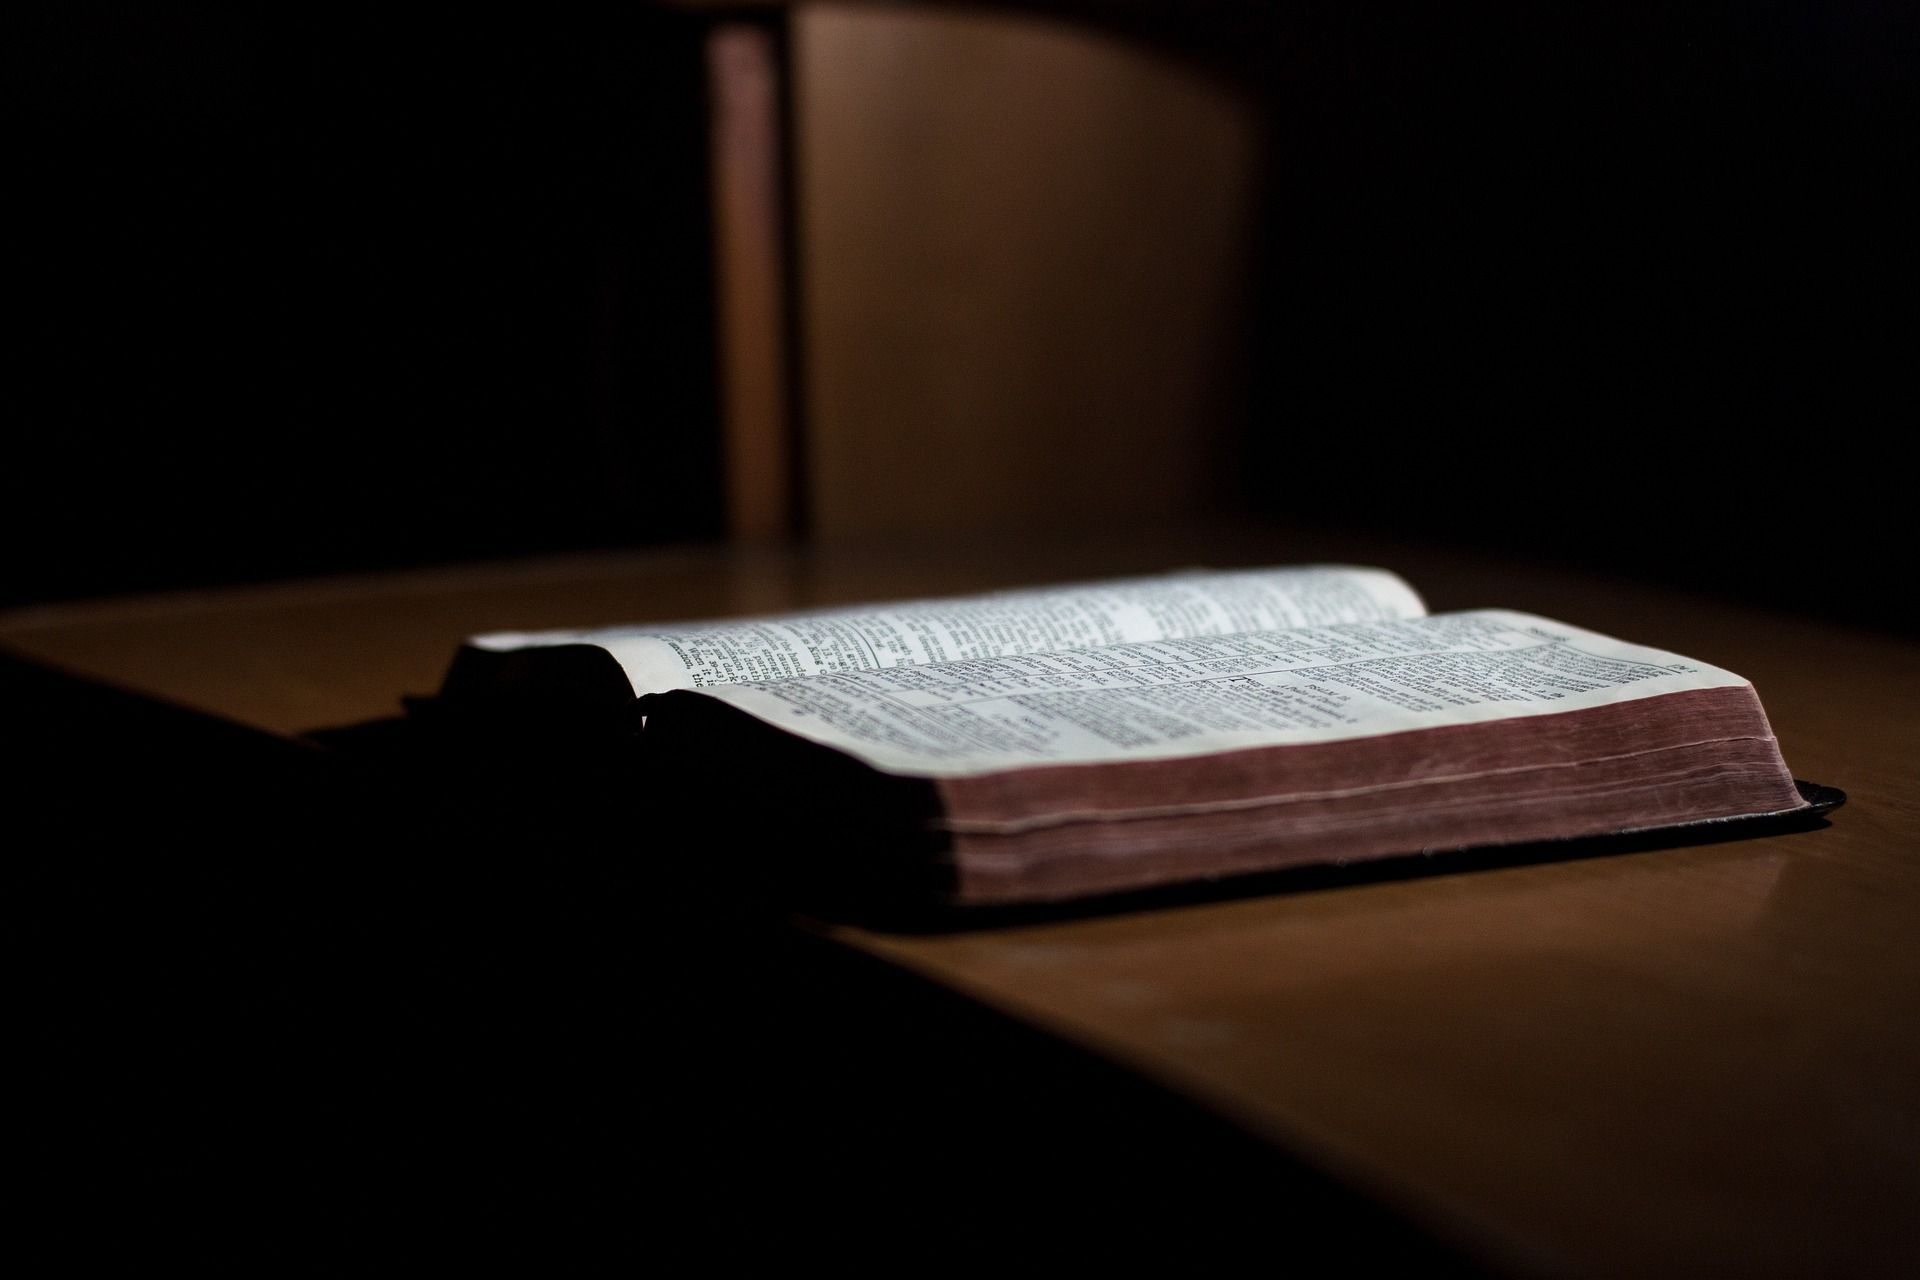 Une bible posée sur une table en bois avec un fond sombre - Image par StockSnap de https://pixabay.com/fr/photos/livre-bible-en-train-de-lire-table-2596785/